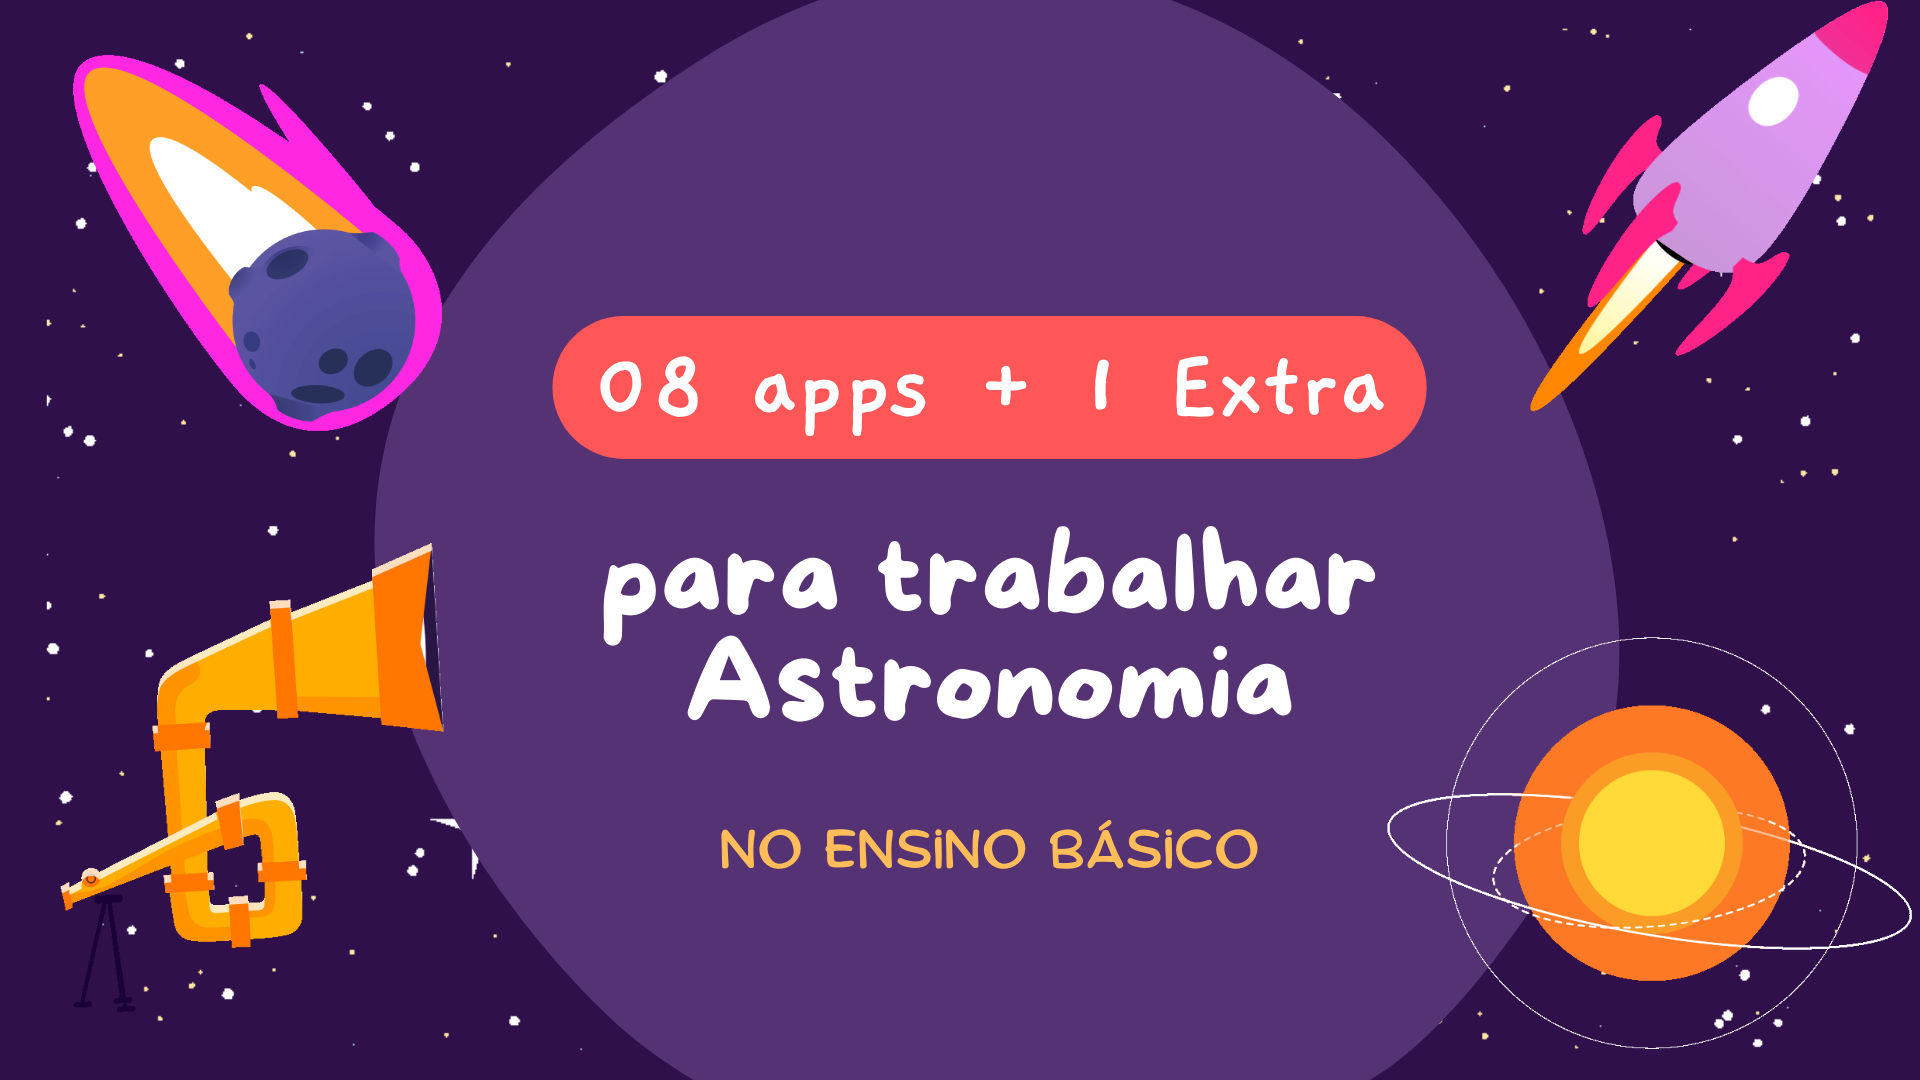 Você está visualizando atualmente 8 apps gratuitos (+1 extra) para trabalhar Astronomia no Ensino Básico